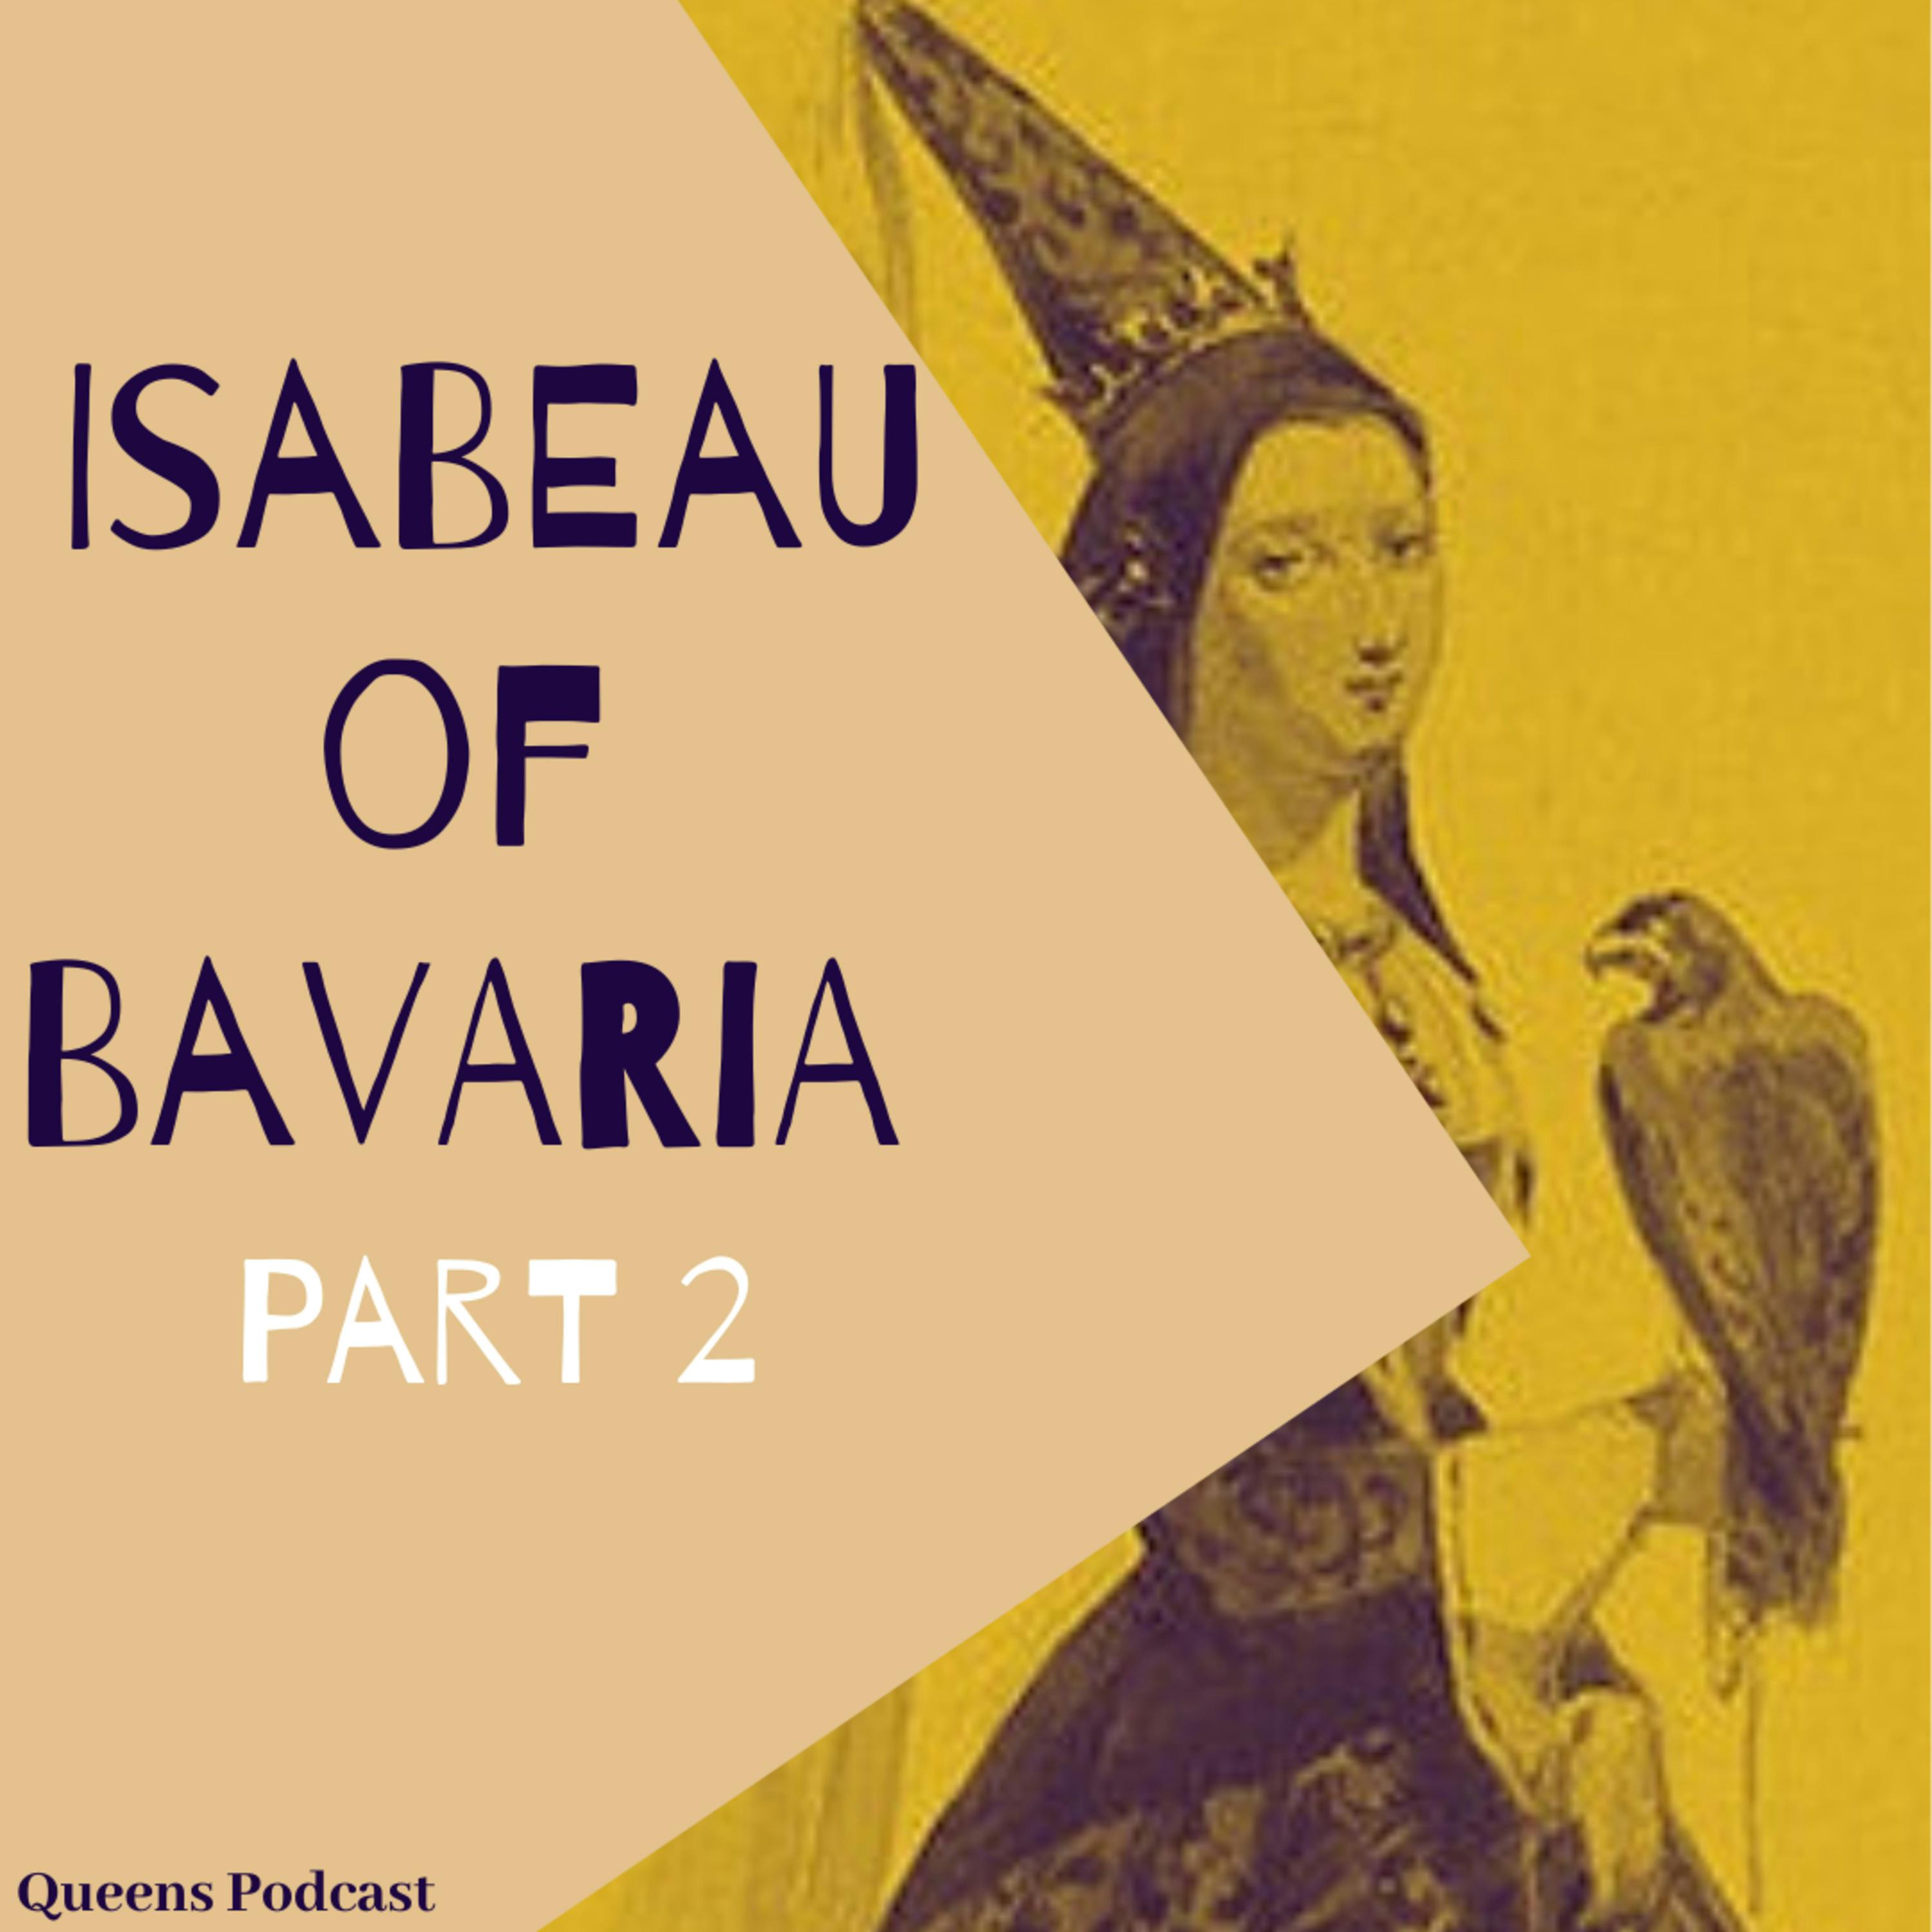 Isabeau of Bavaria, part 2